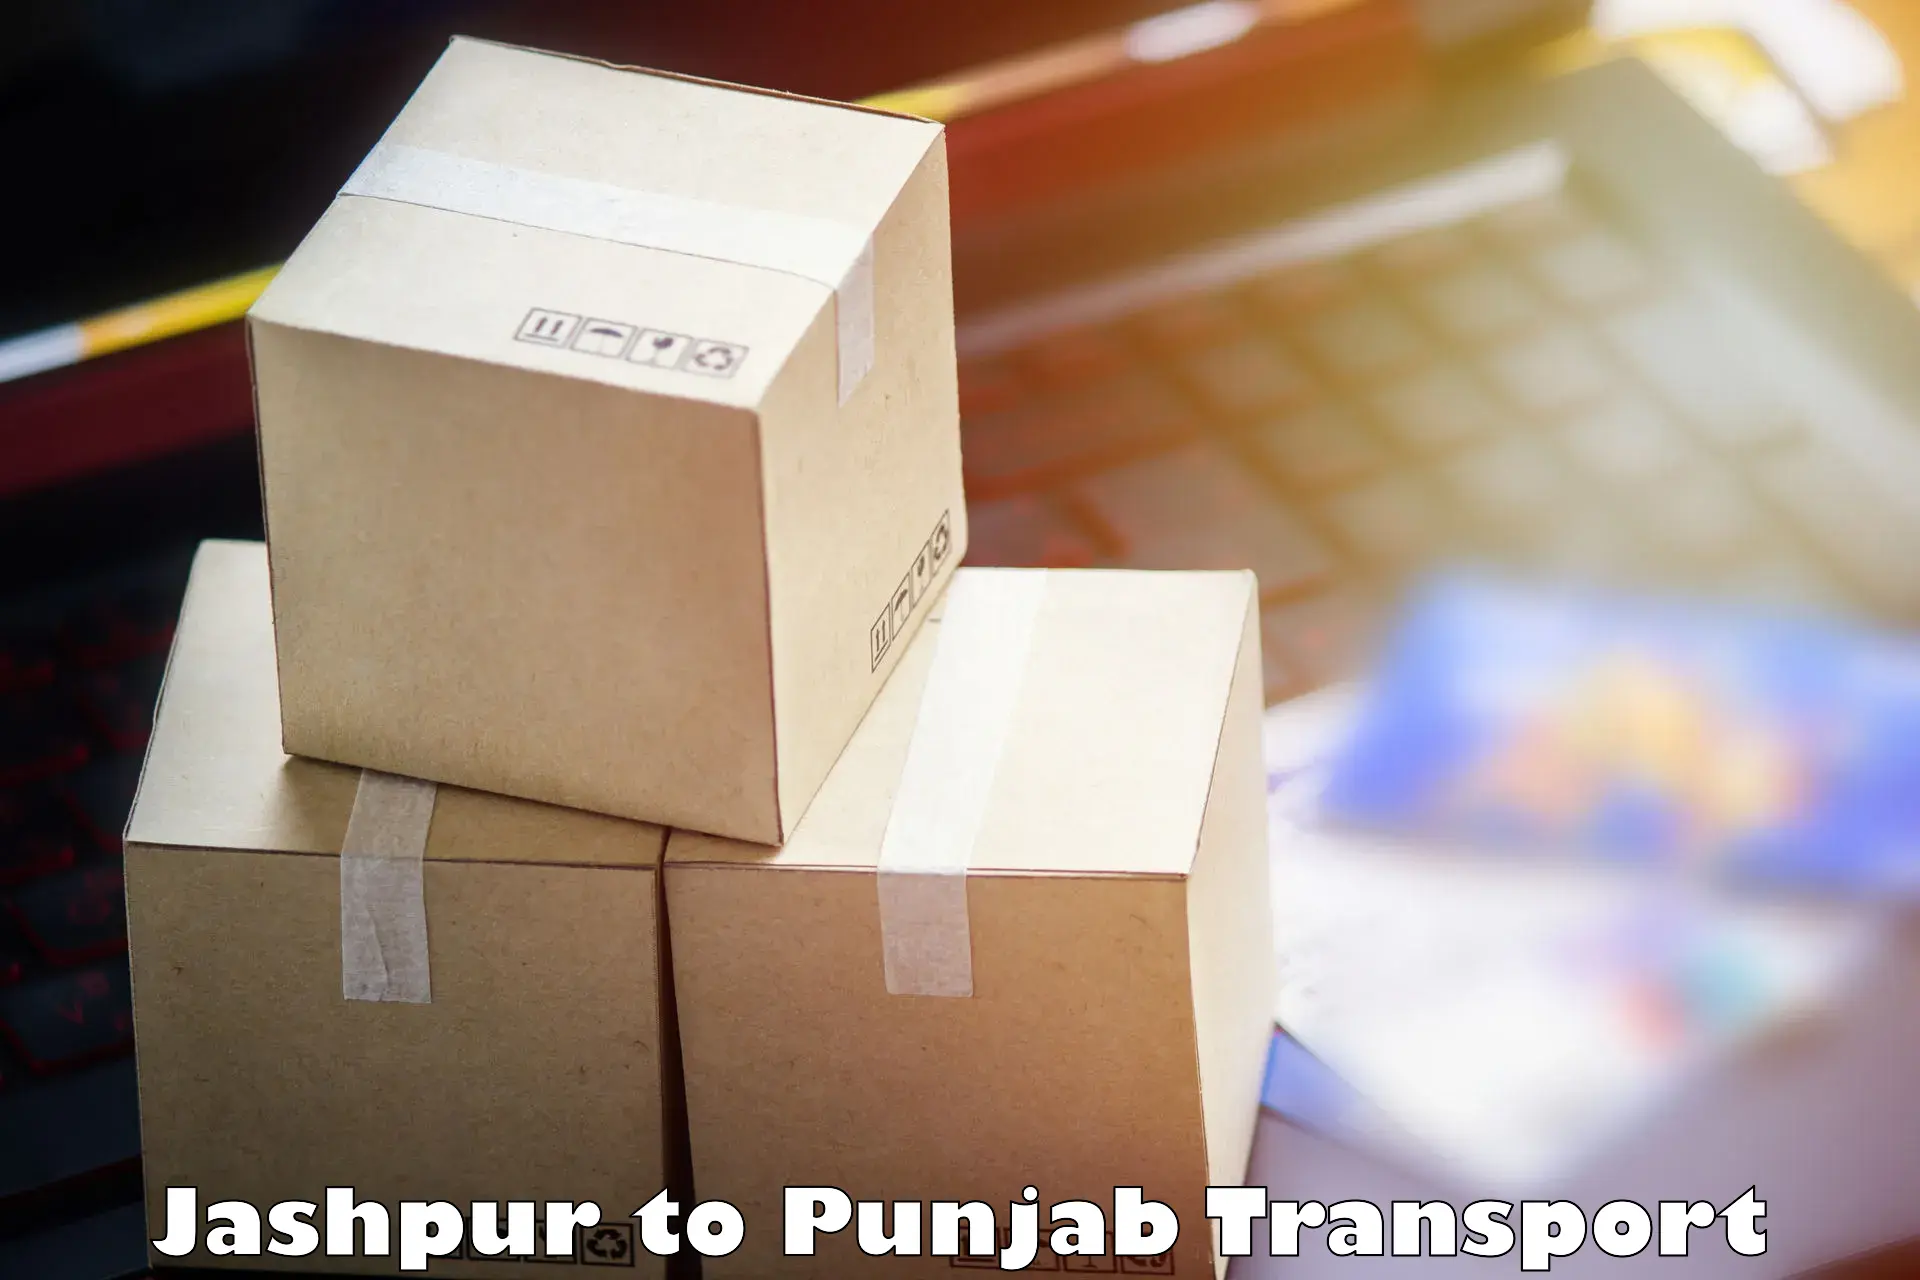 Furniture transport service Jashpur to Ropar